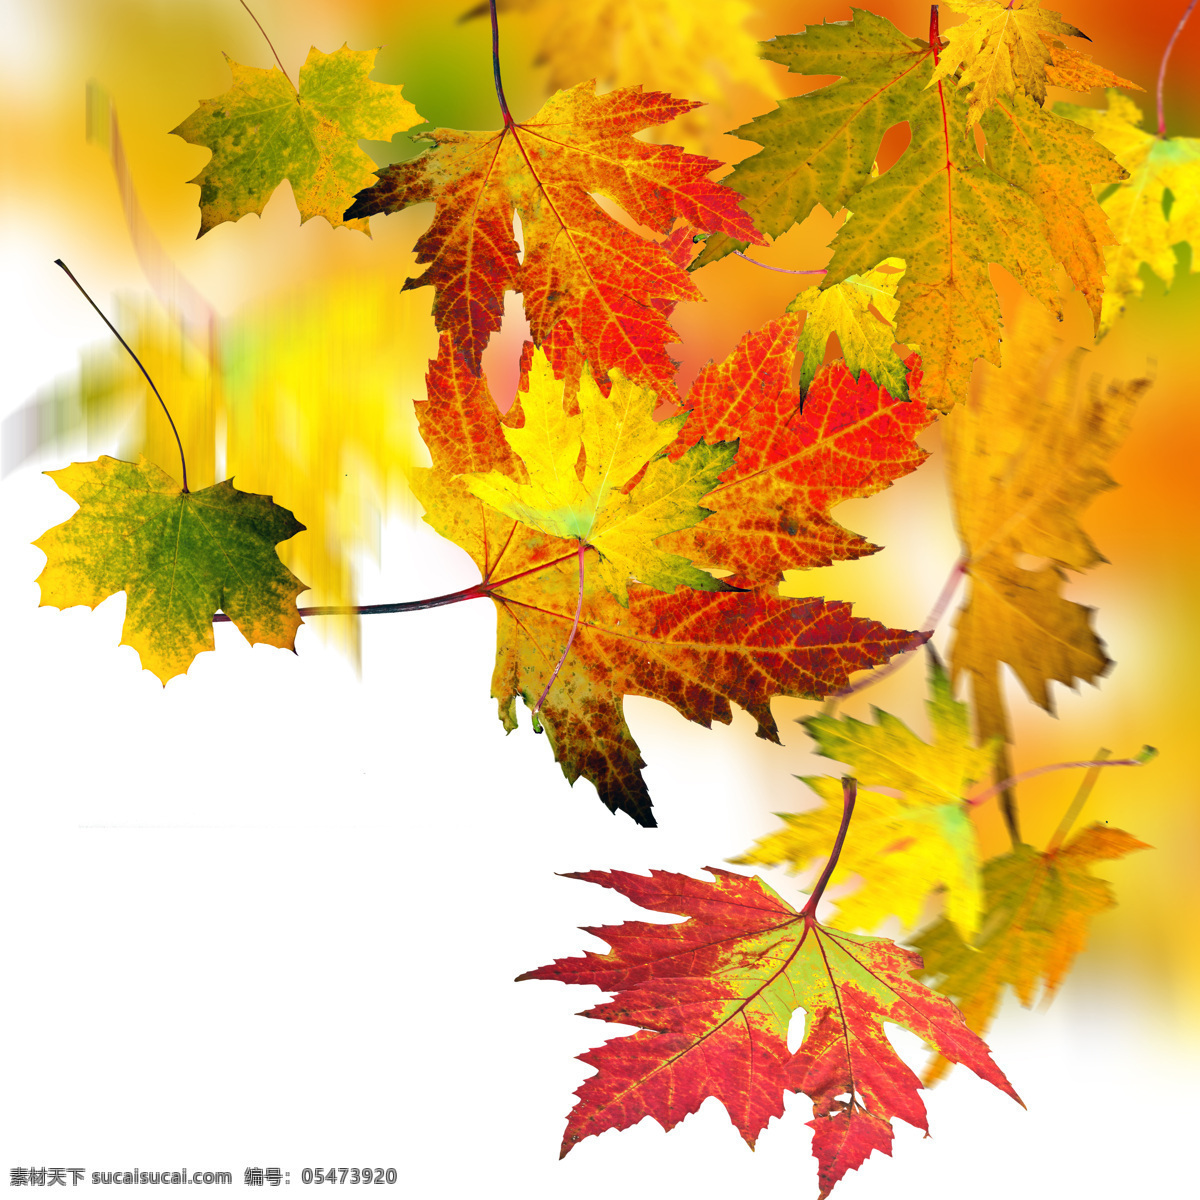 秋天 树叶 背景 秋天树叶背景 树叶背景 秋天树叶 树叶摄影 植物 山水风景 风景图片